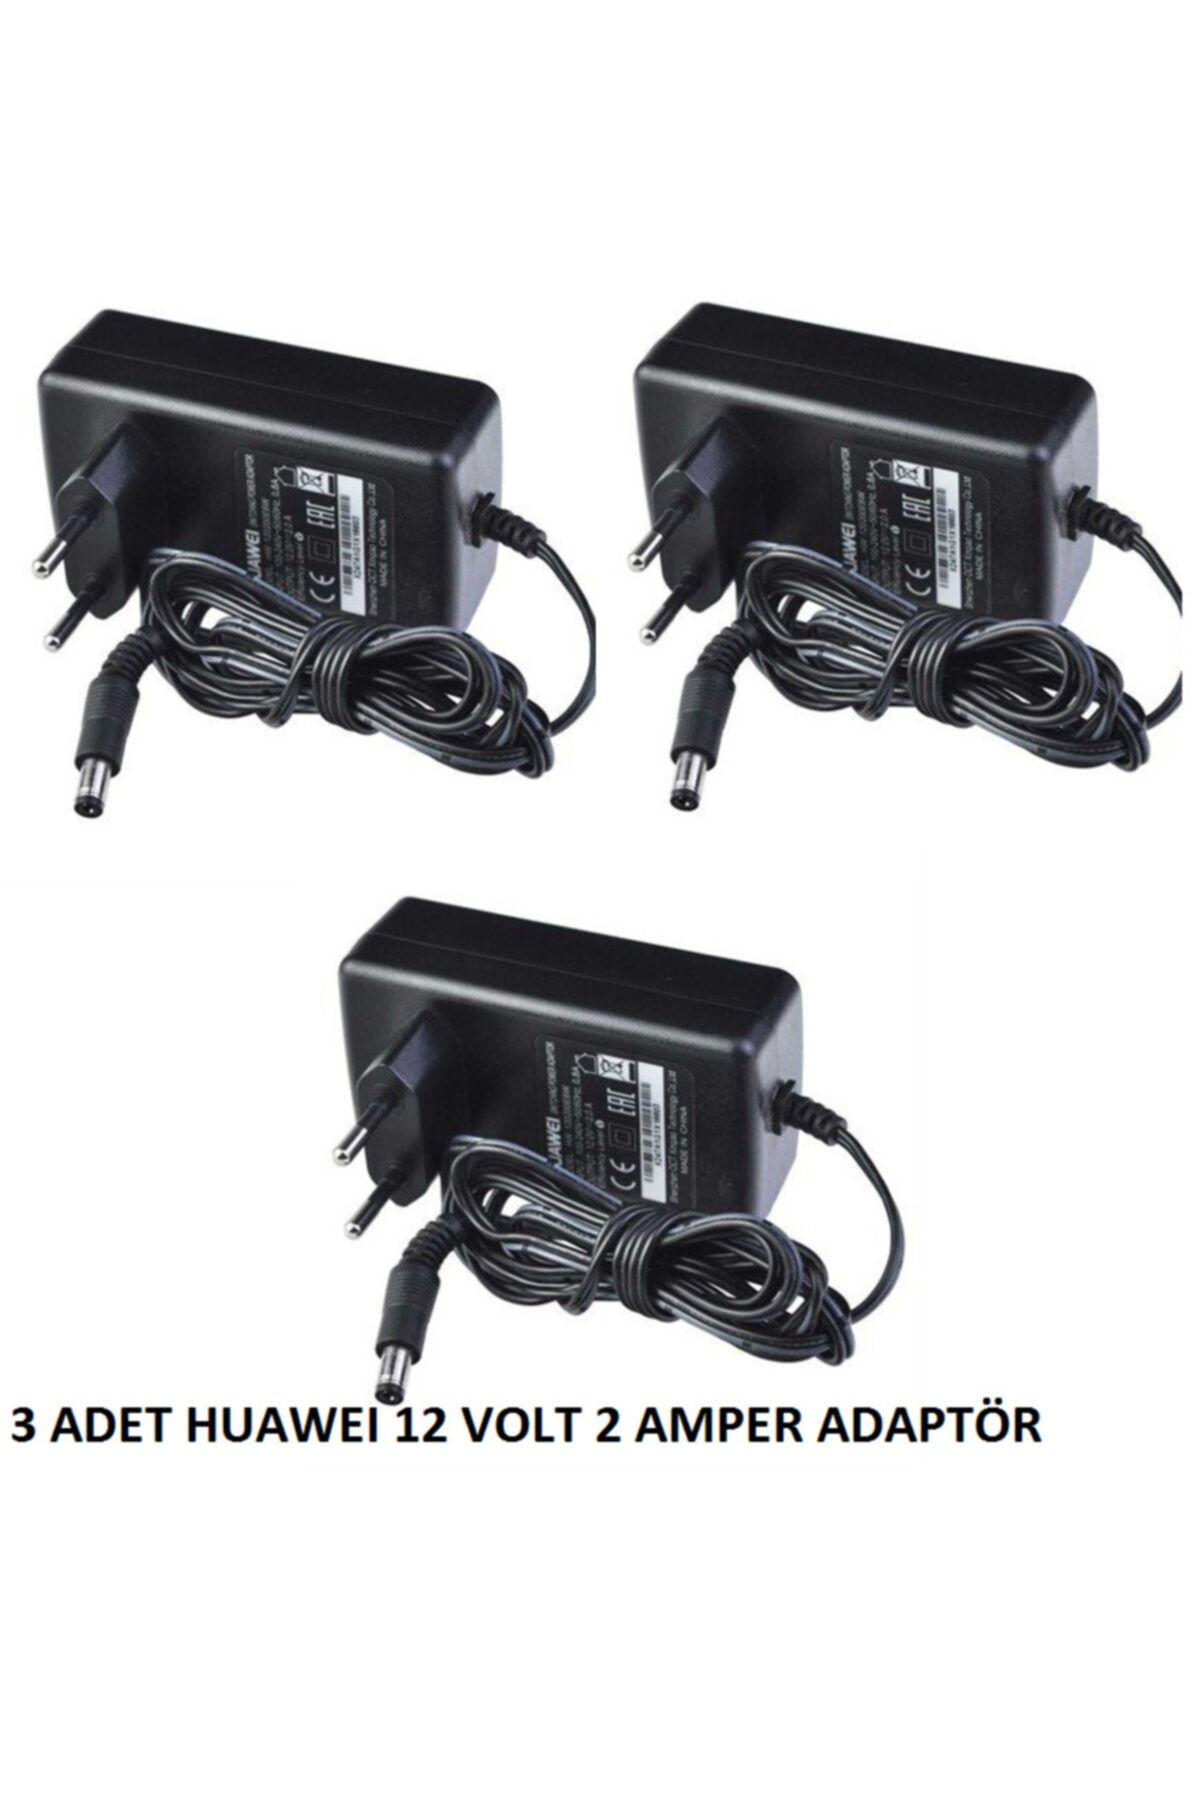 Huawei Hw 120200e6w 3 Adet 12v - 2a Modem Adaptör - Siyah